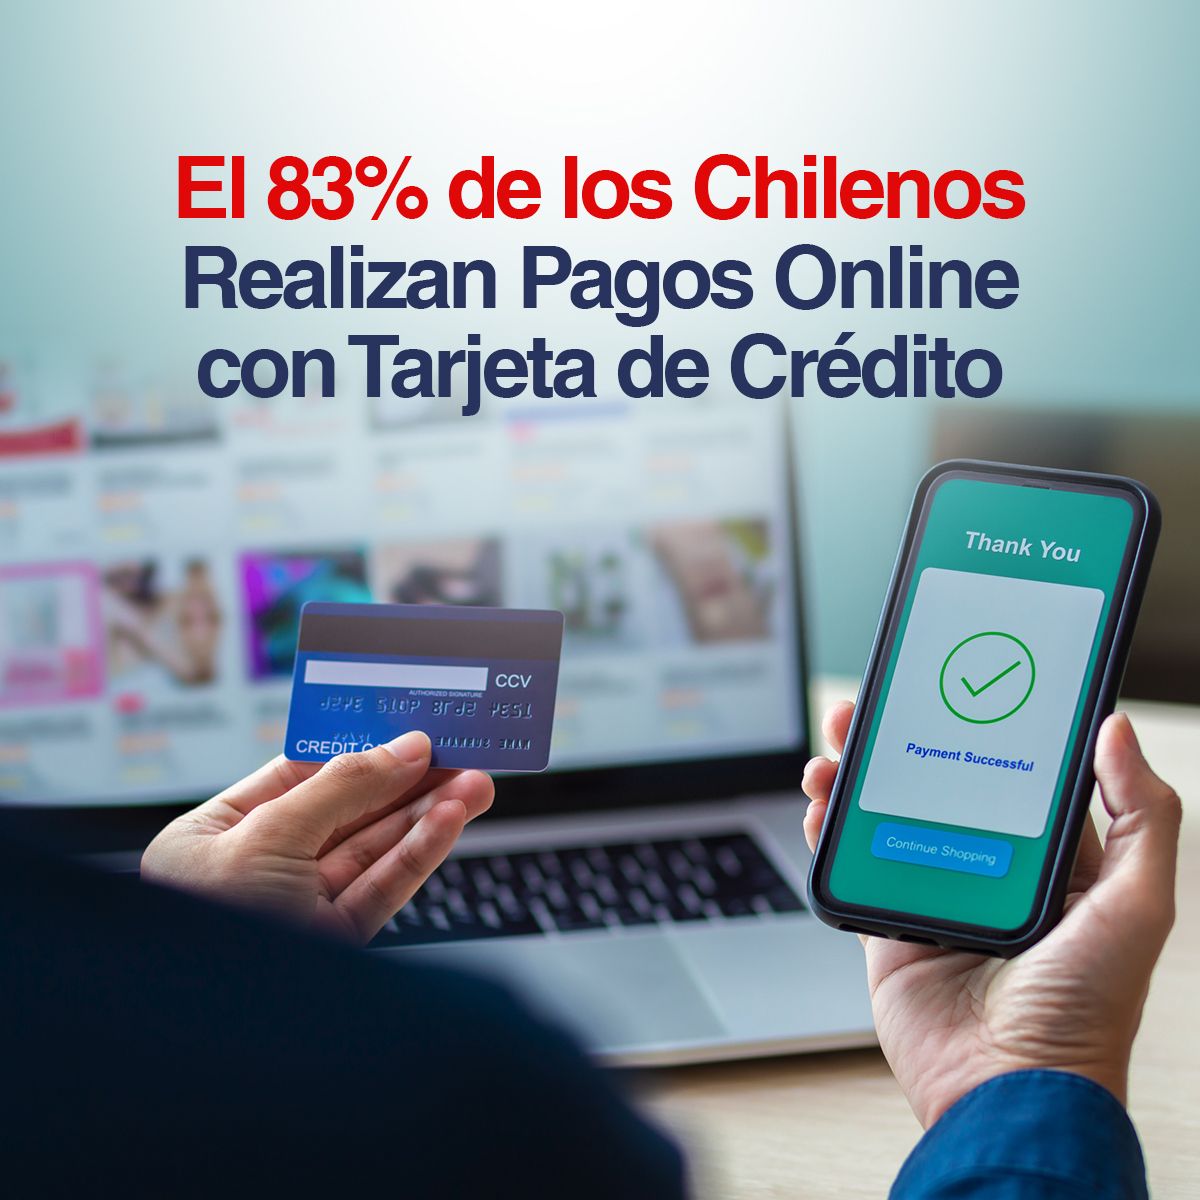 El 83% de los Chilenos Realizan Pagos Online con Tarjeta de Crédito